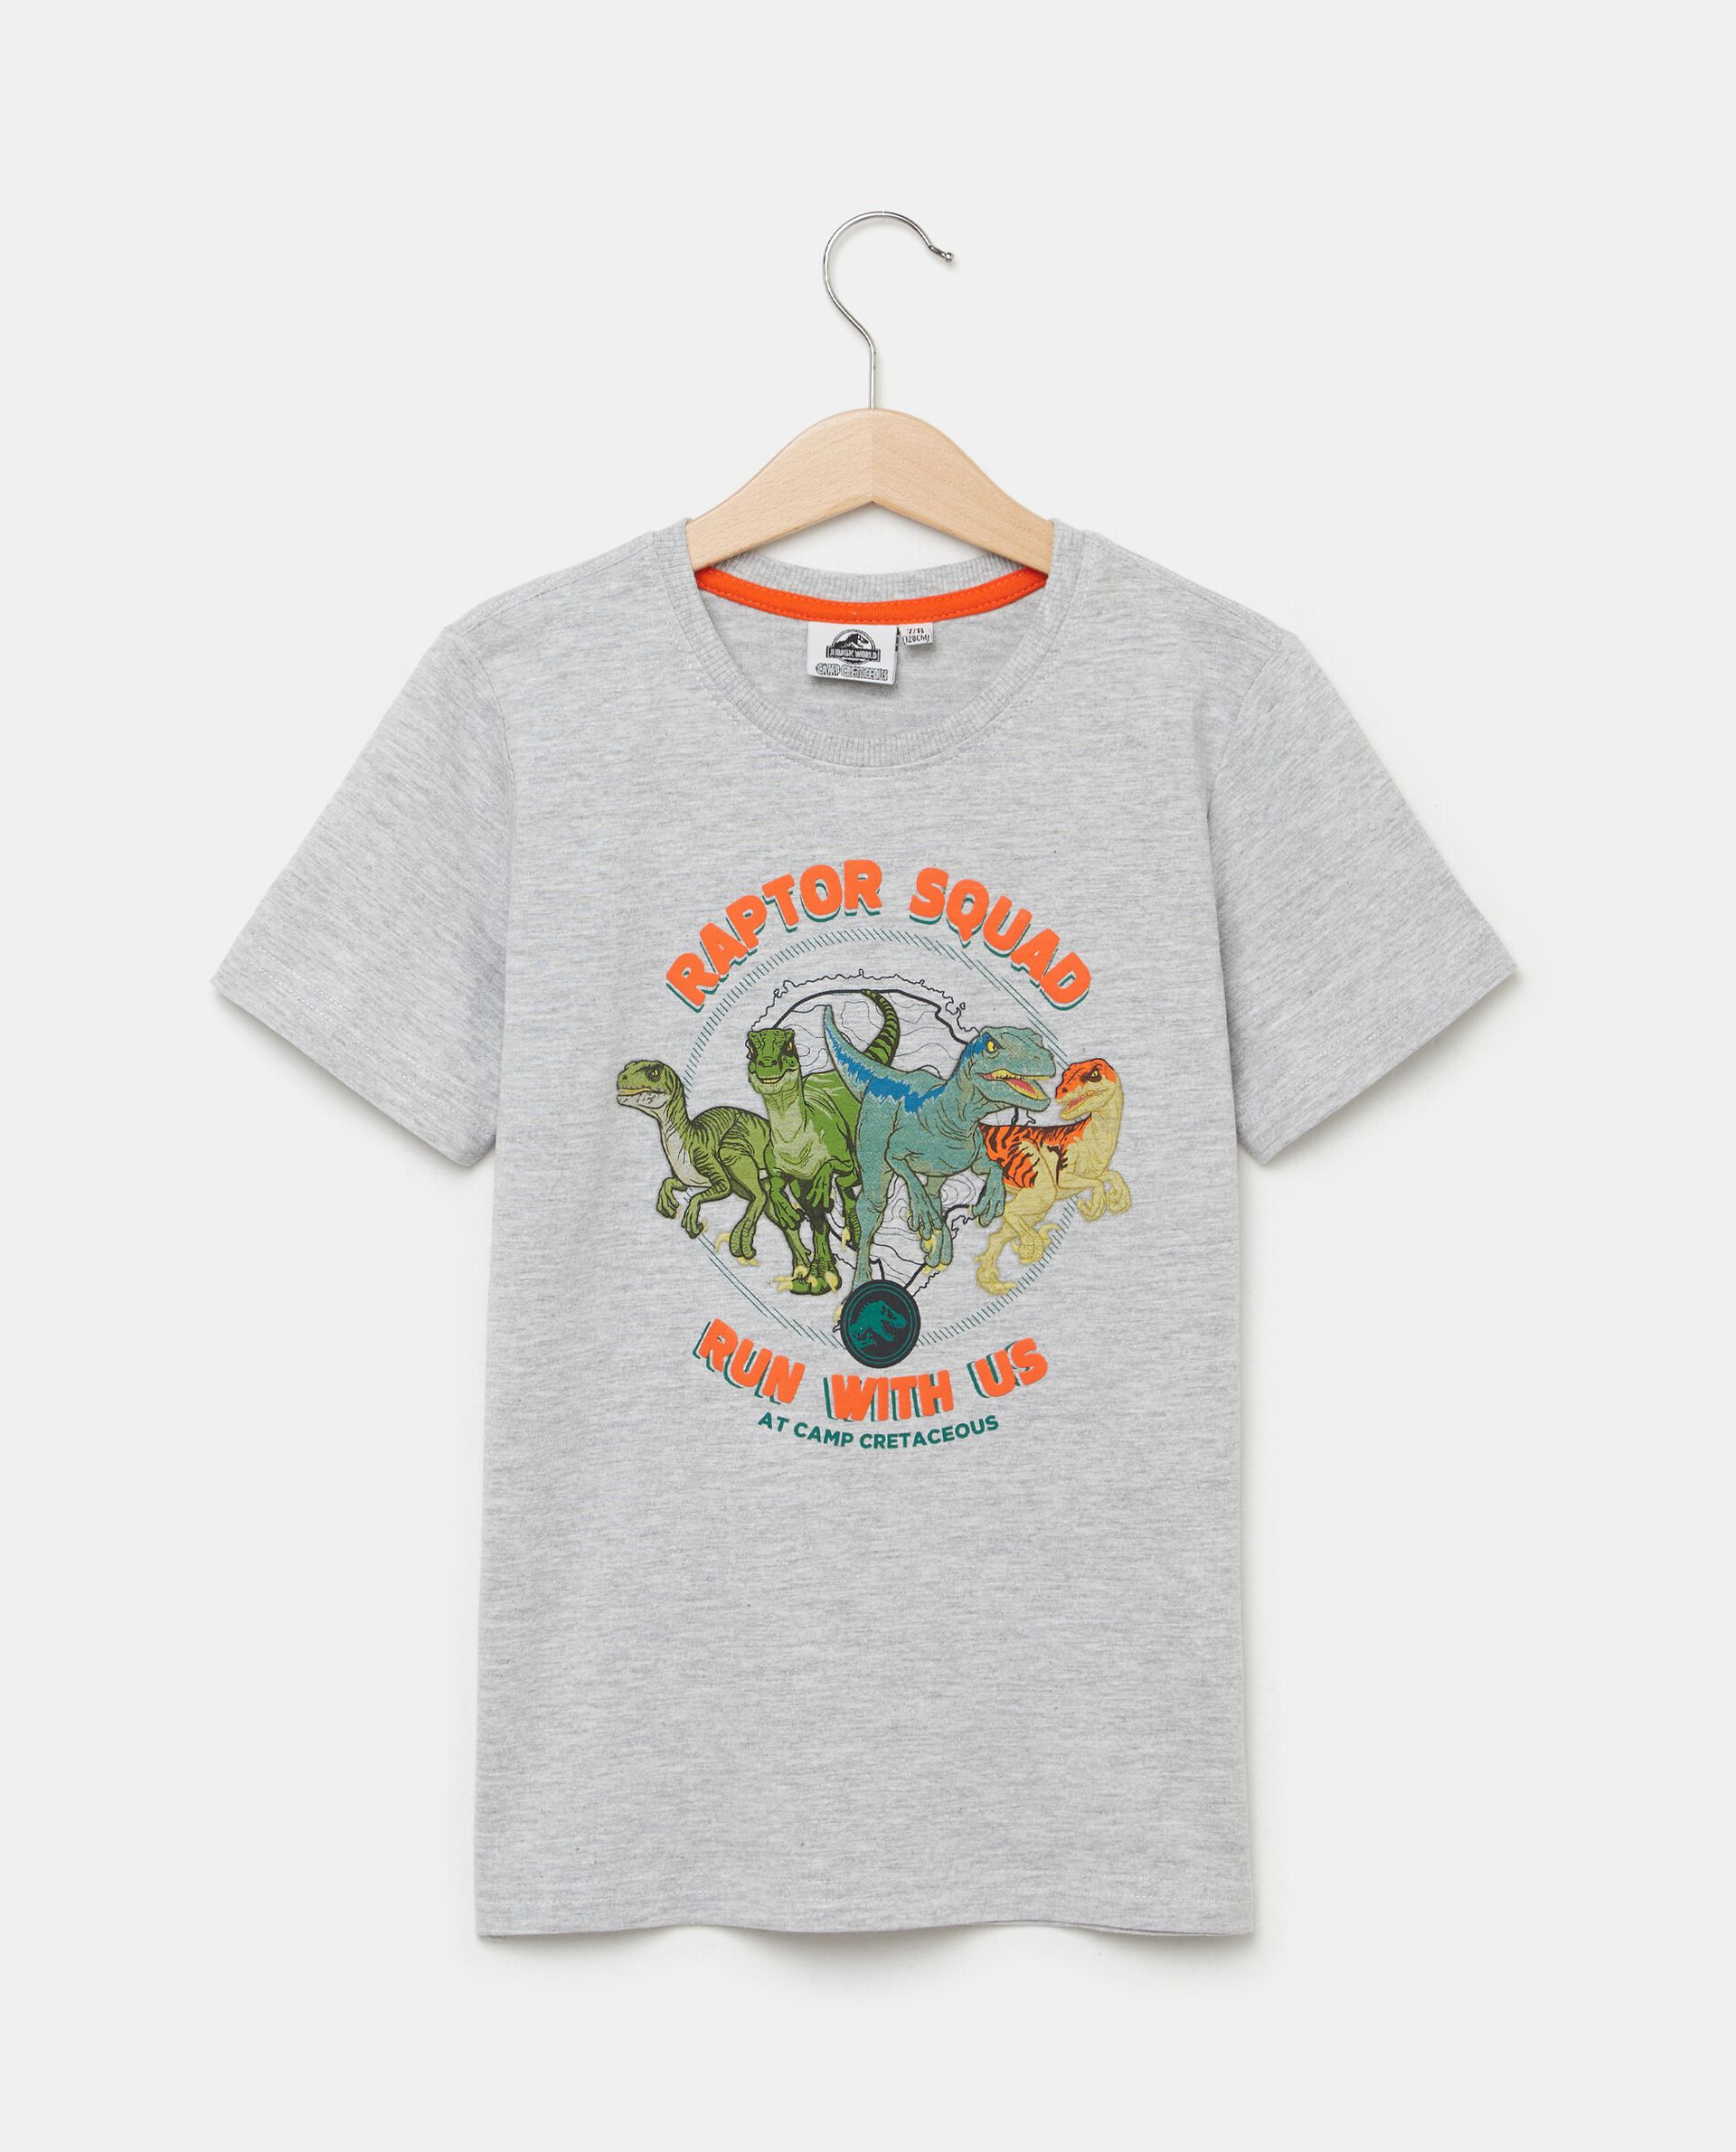 T-shirt con stampa Jurassic Park puro cotone bambino